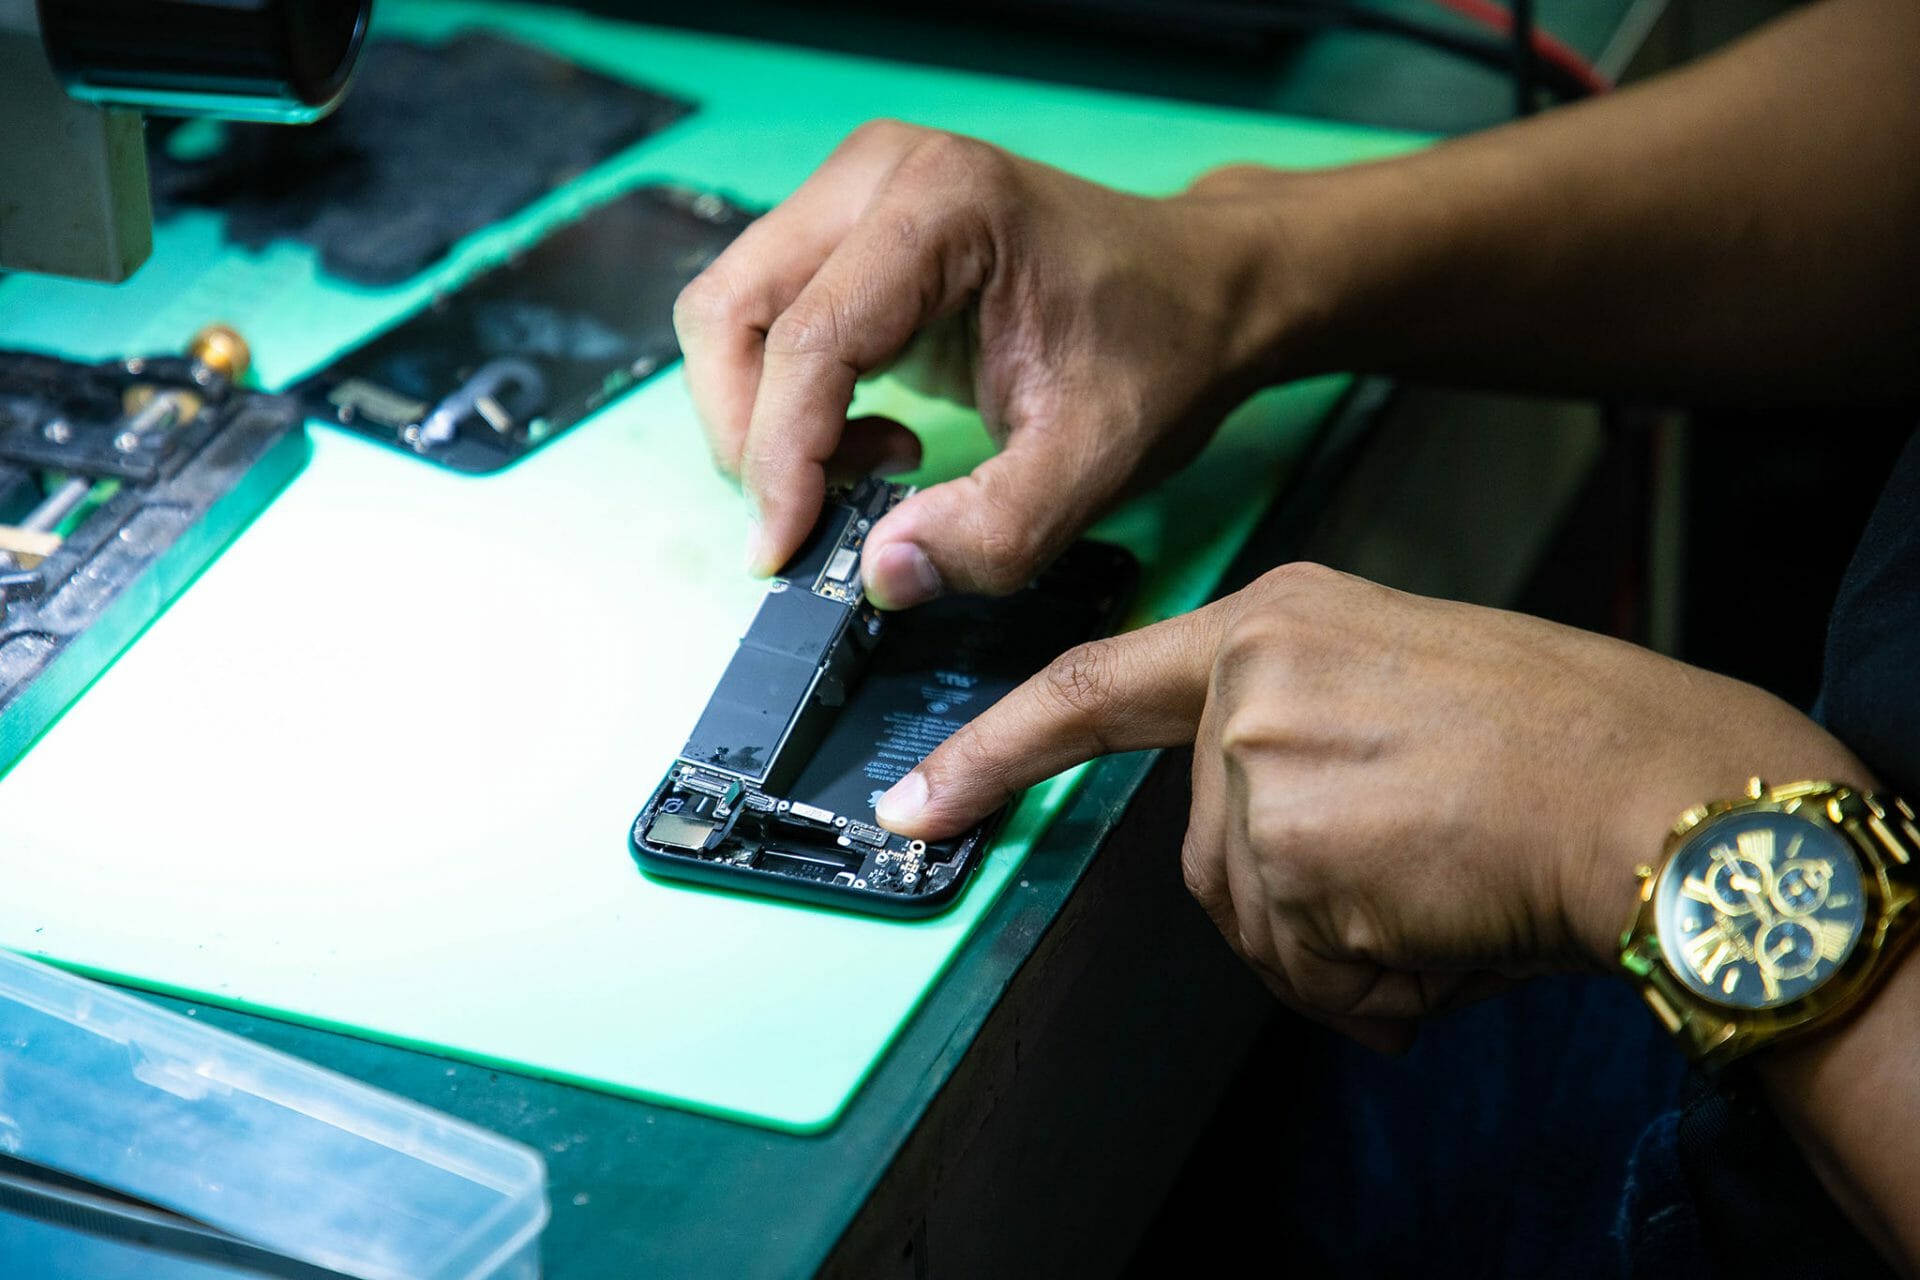 ซ่อมมือถือ แถว มหาวิทยาลัยศรีนครินทรวิโรฒ มศว ร้านไหนดี บริการซ่อมดีที่สุด 🥇 ศูนย์ซ่อม โทรศัพท์มือถือ มือถือทุกรุ่น ทุกยี่ห้อ iPhone | Apple | Samsung | Huawei 🥇 ศูนย์ซ่อม โทรศัพท์มือถือ มือถือทุกรุ่น ทุกยี่ห้อ iPhone | Apple | Samsung | Huawei